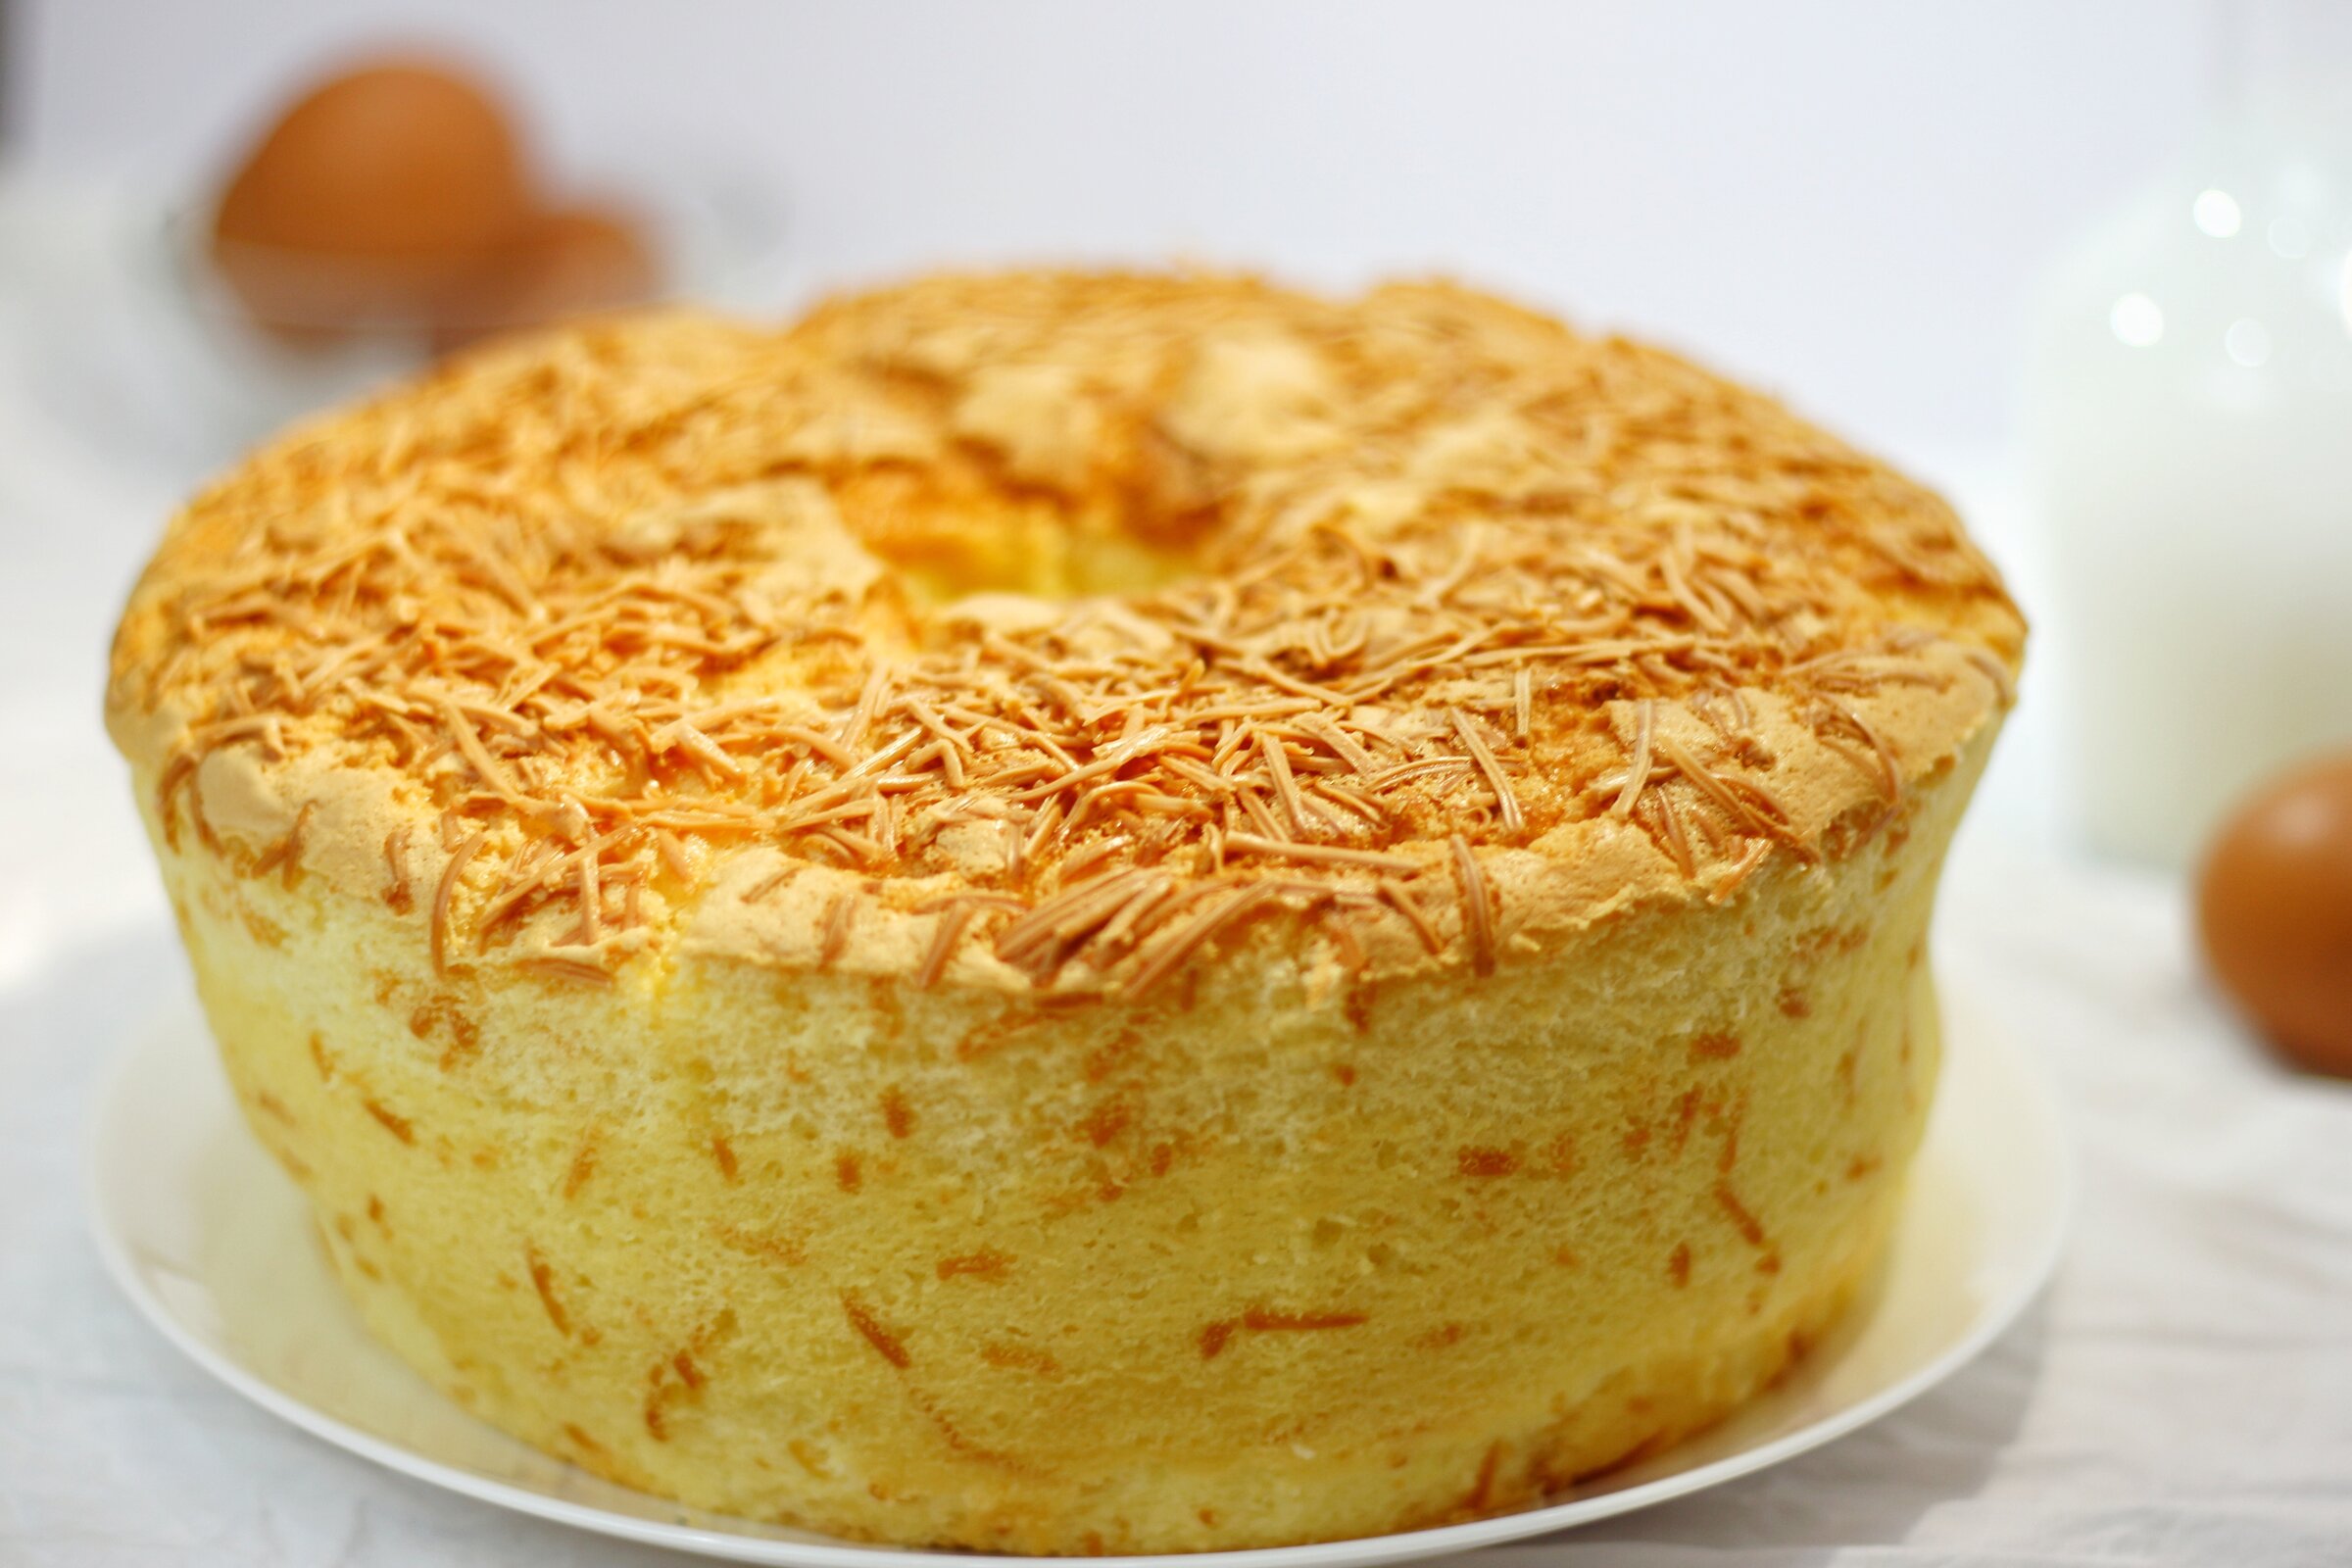 bolo pão de queijo de liquidificador é fácil de fazer; confira o passo a passo!